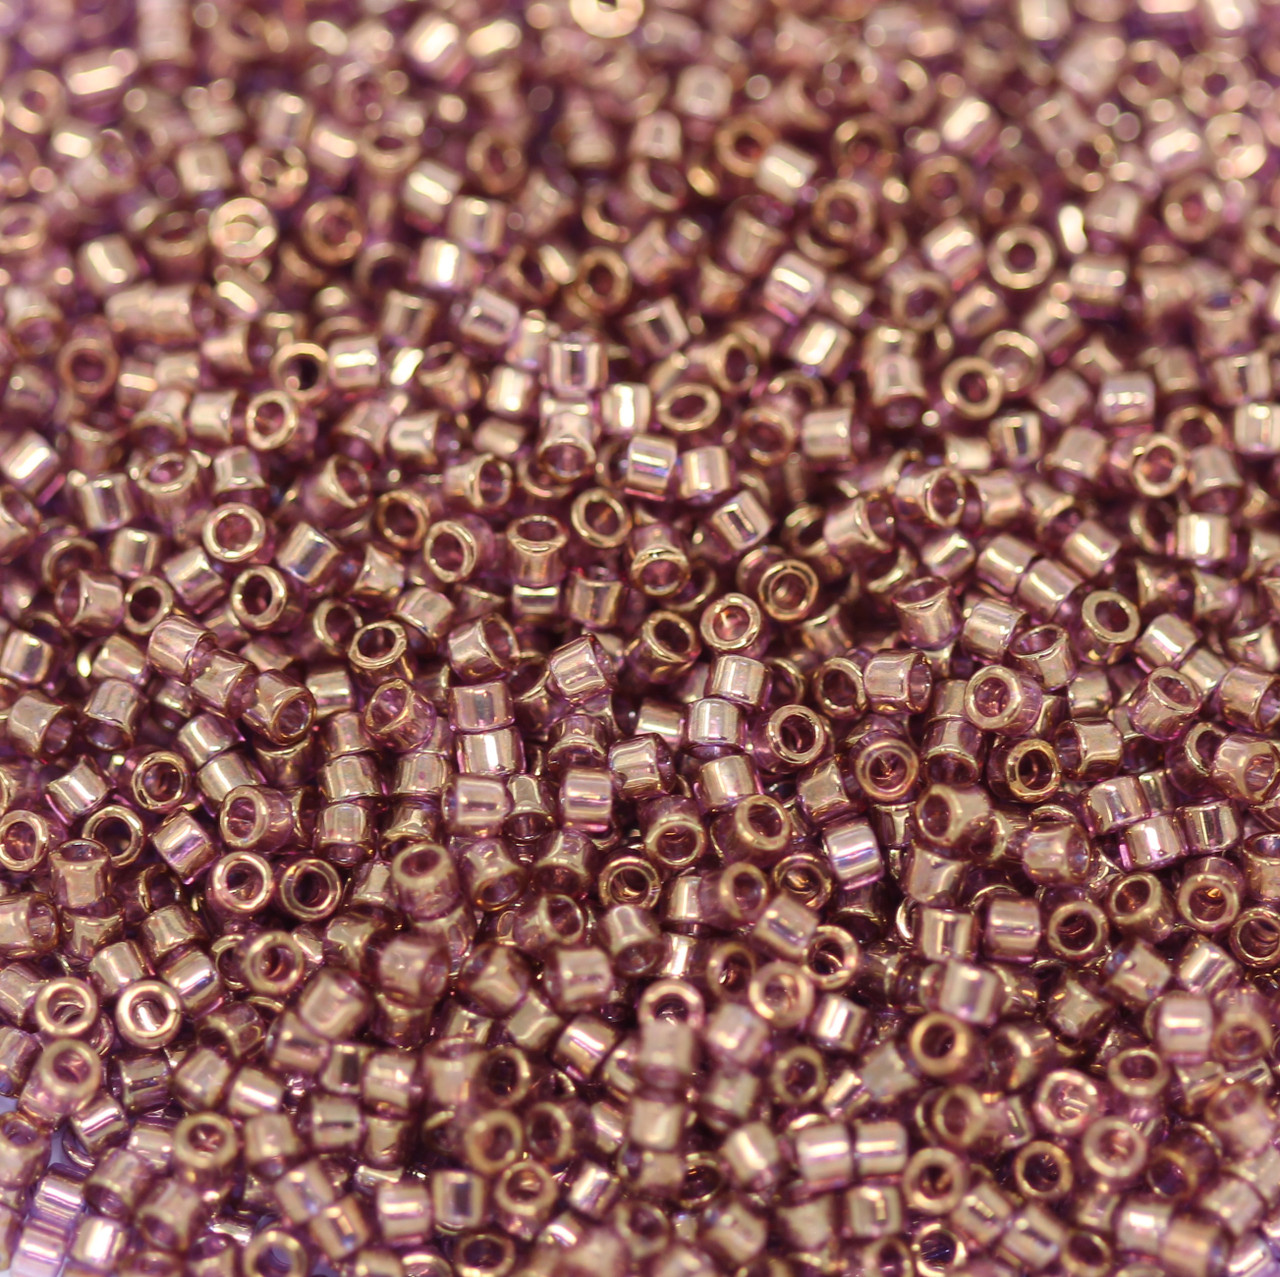 Toho CUBE Seed Beads 4mm MATTE IRIS TEAL 2.5 Tube